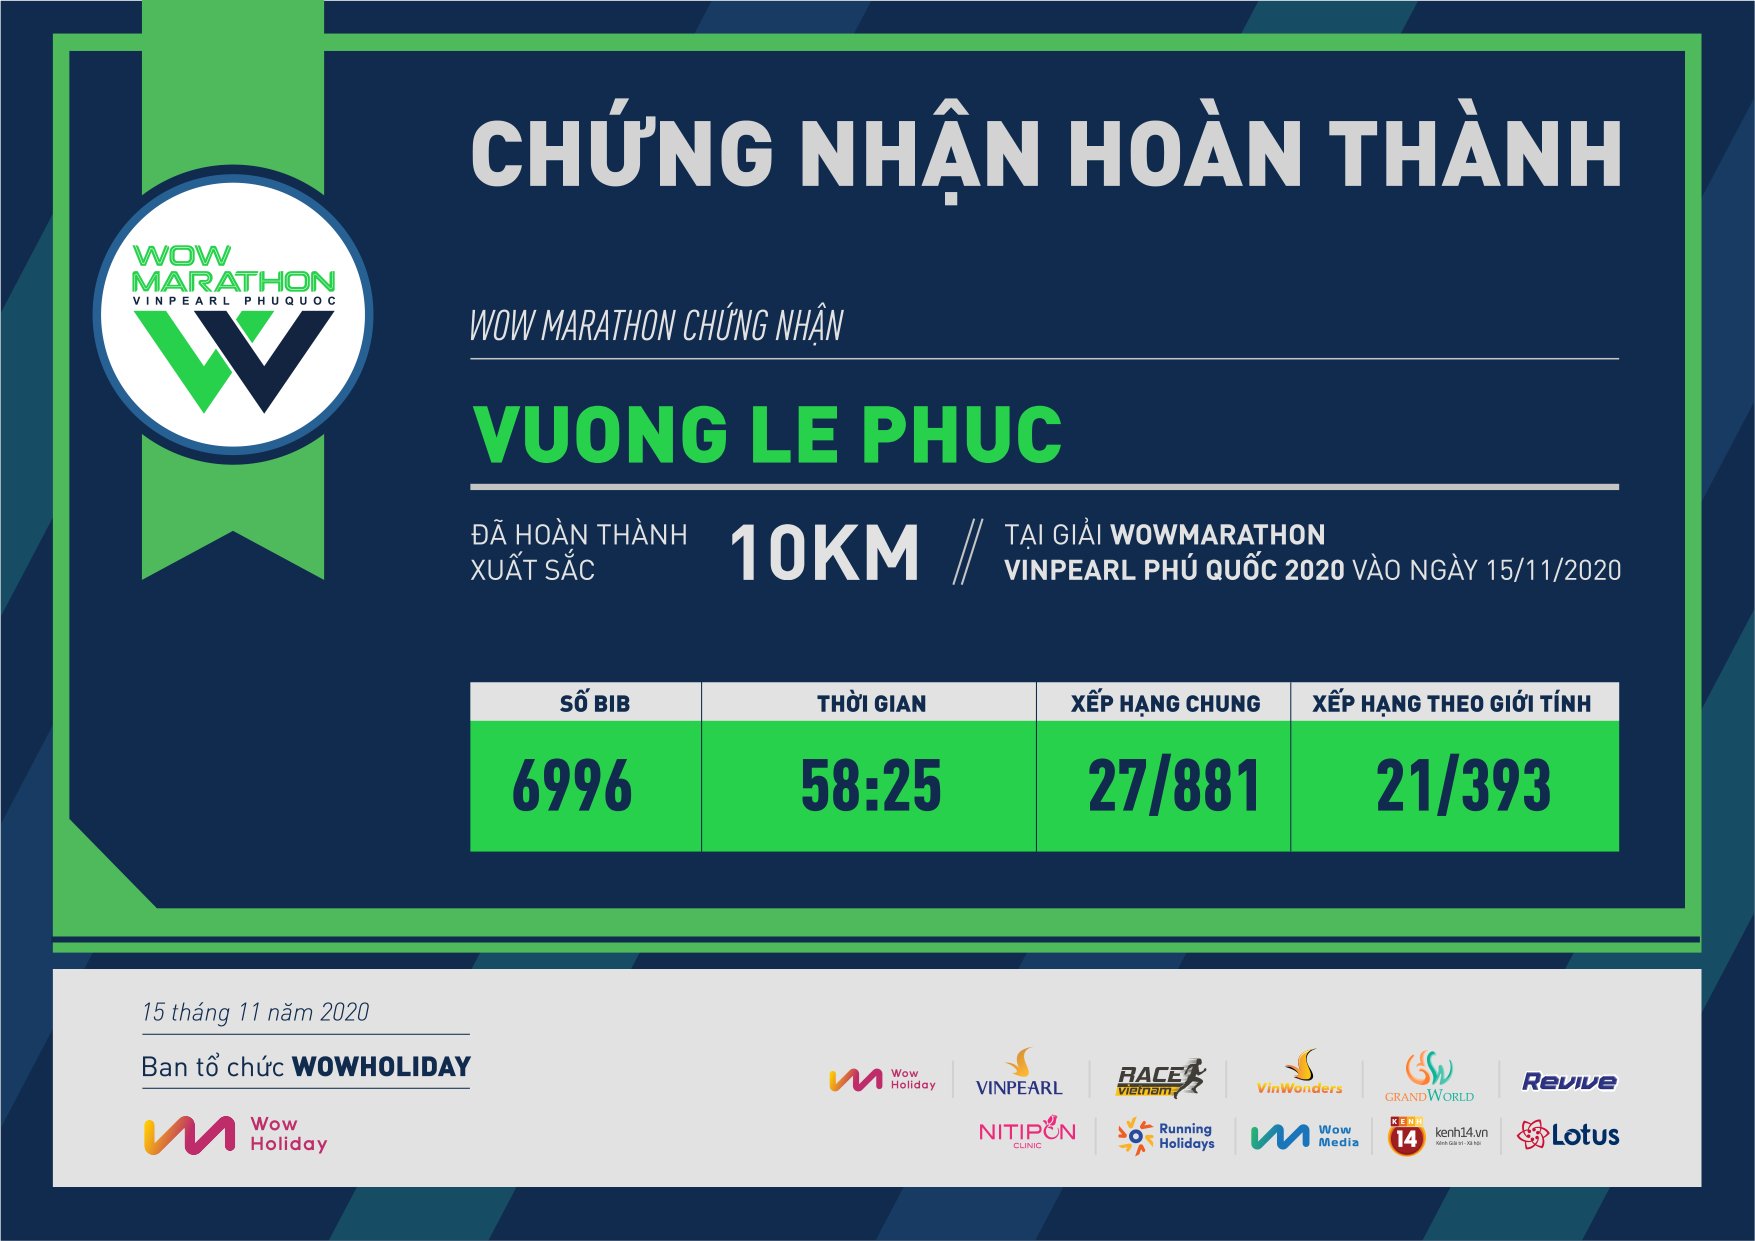 6996 - Vuong Le Phuc